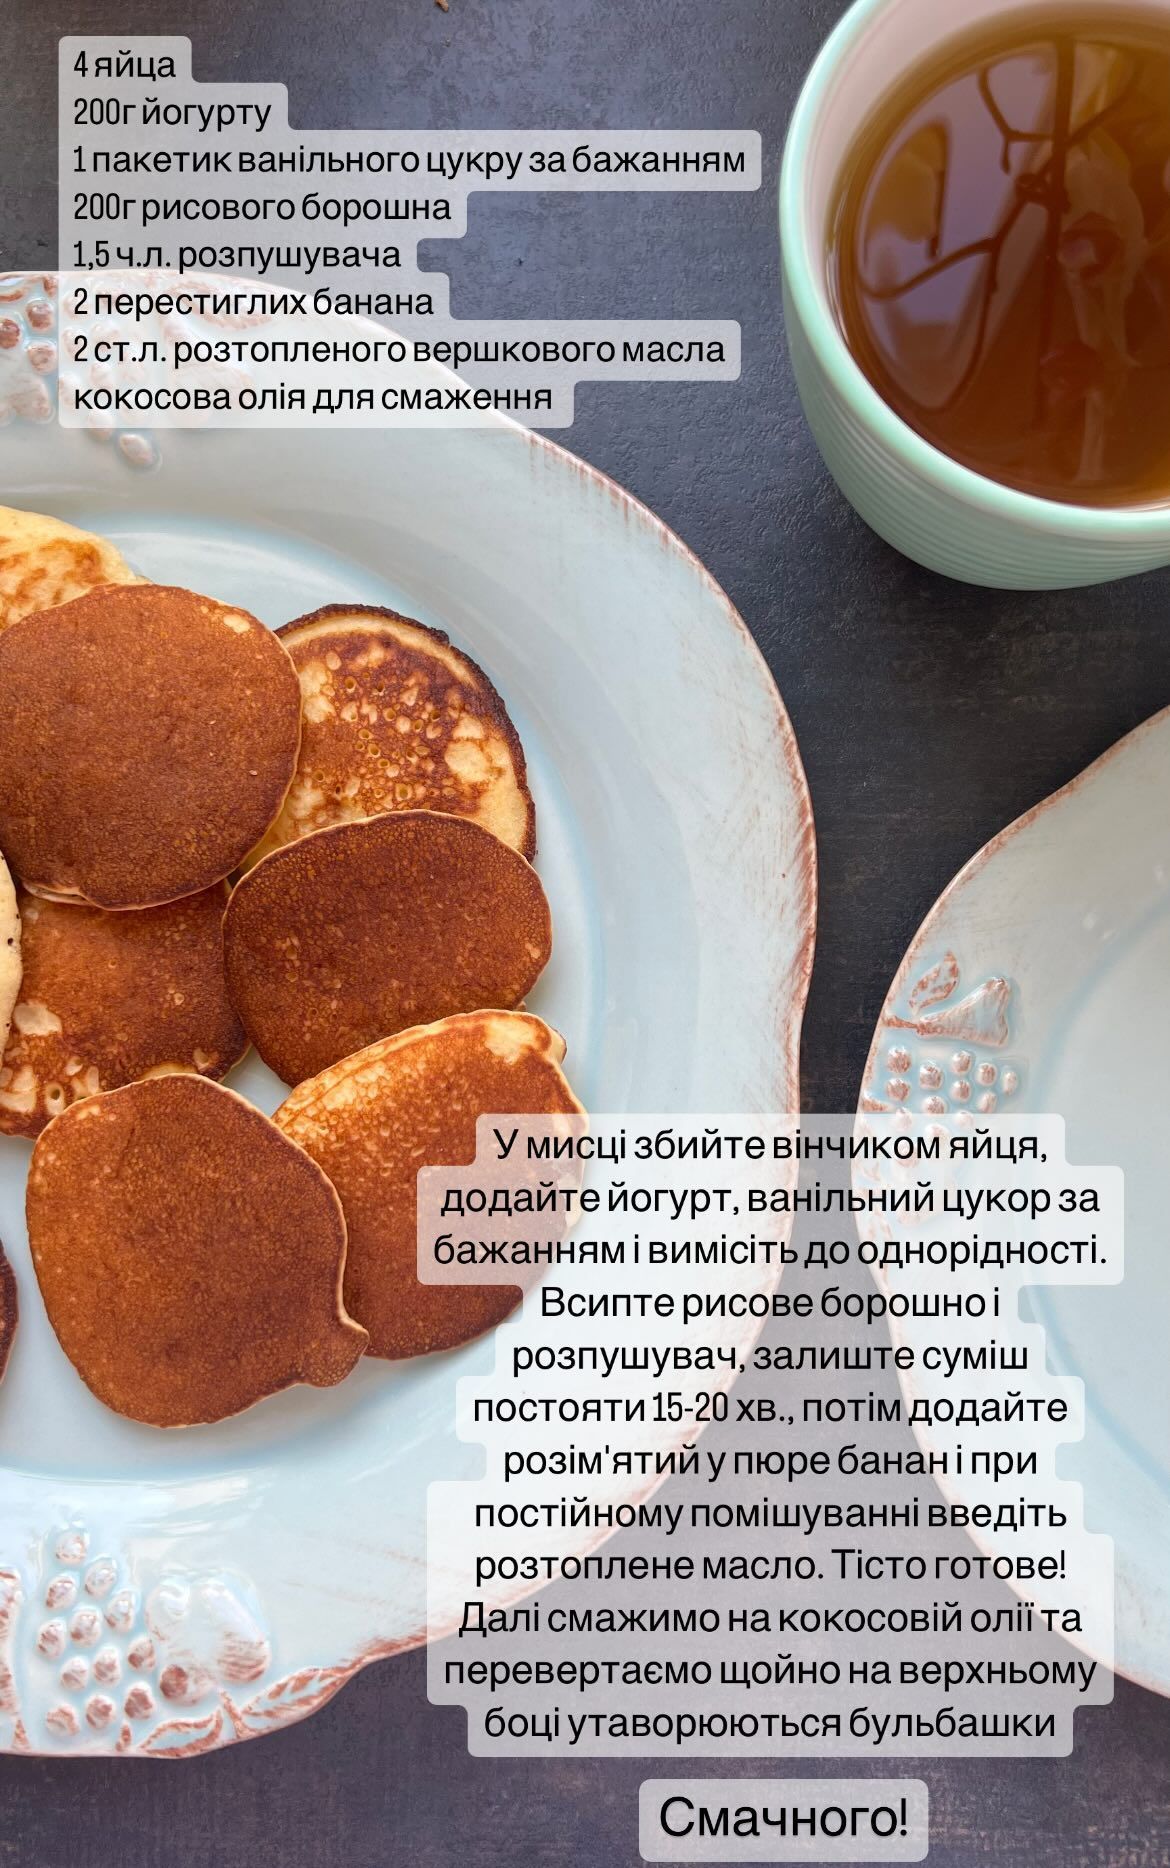 Алена Шоптенко поделилась рецептом завтрака, который приготовила с сыном: “Эти оладьи получились очень вкусными“